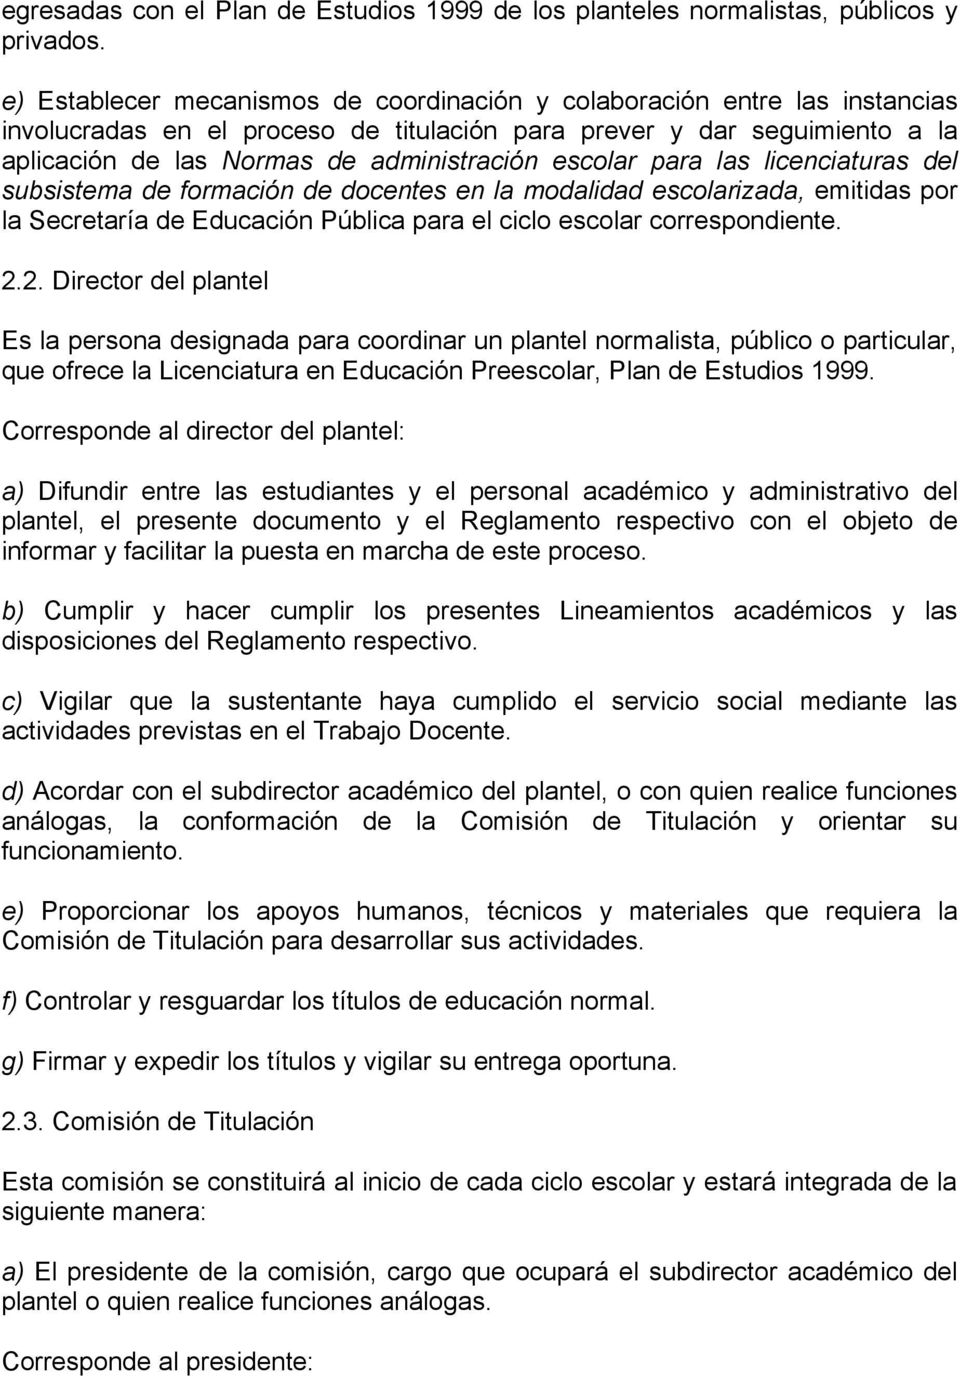 escolar para las licenciaturas del subsistema de formación de docentes en la modalidad escolarizada, emitidas por la Secretaría de Educación Pública para el ciclo escolar correspondiente. 2.